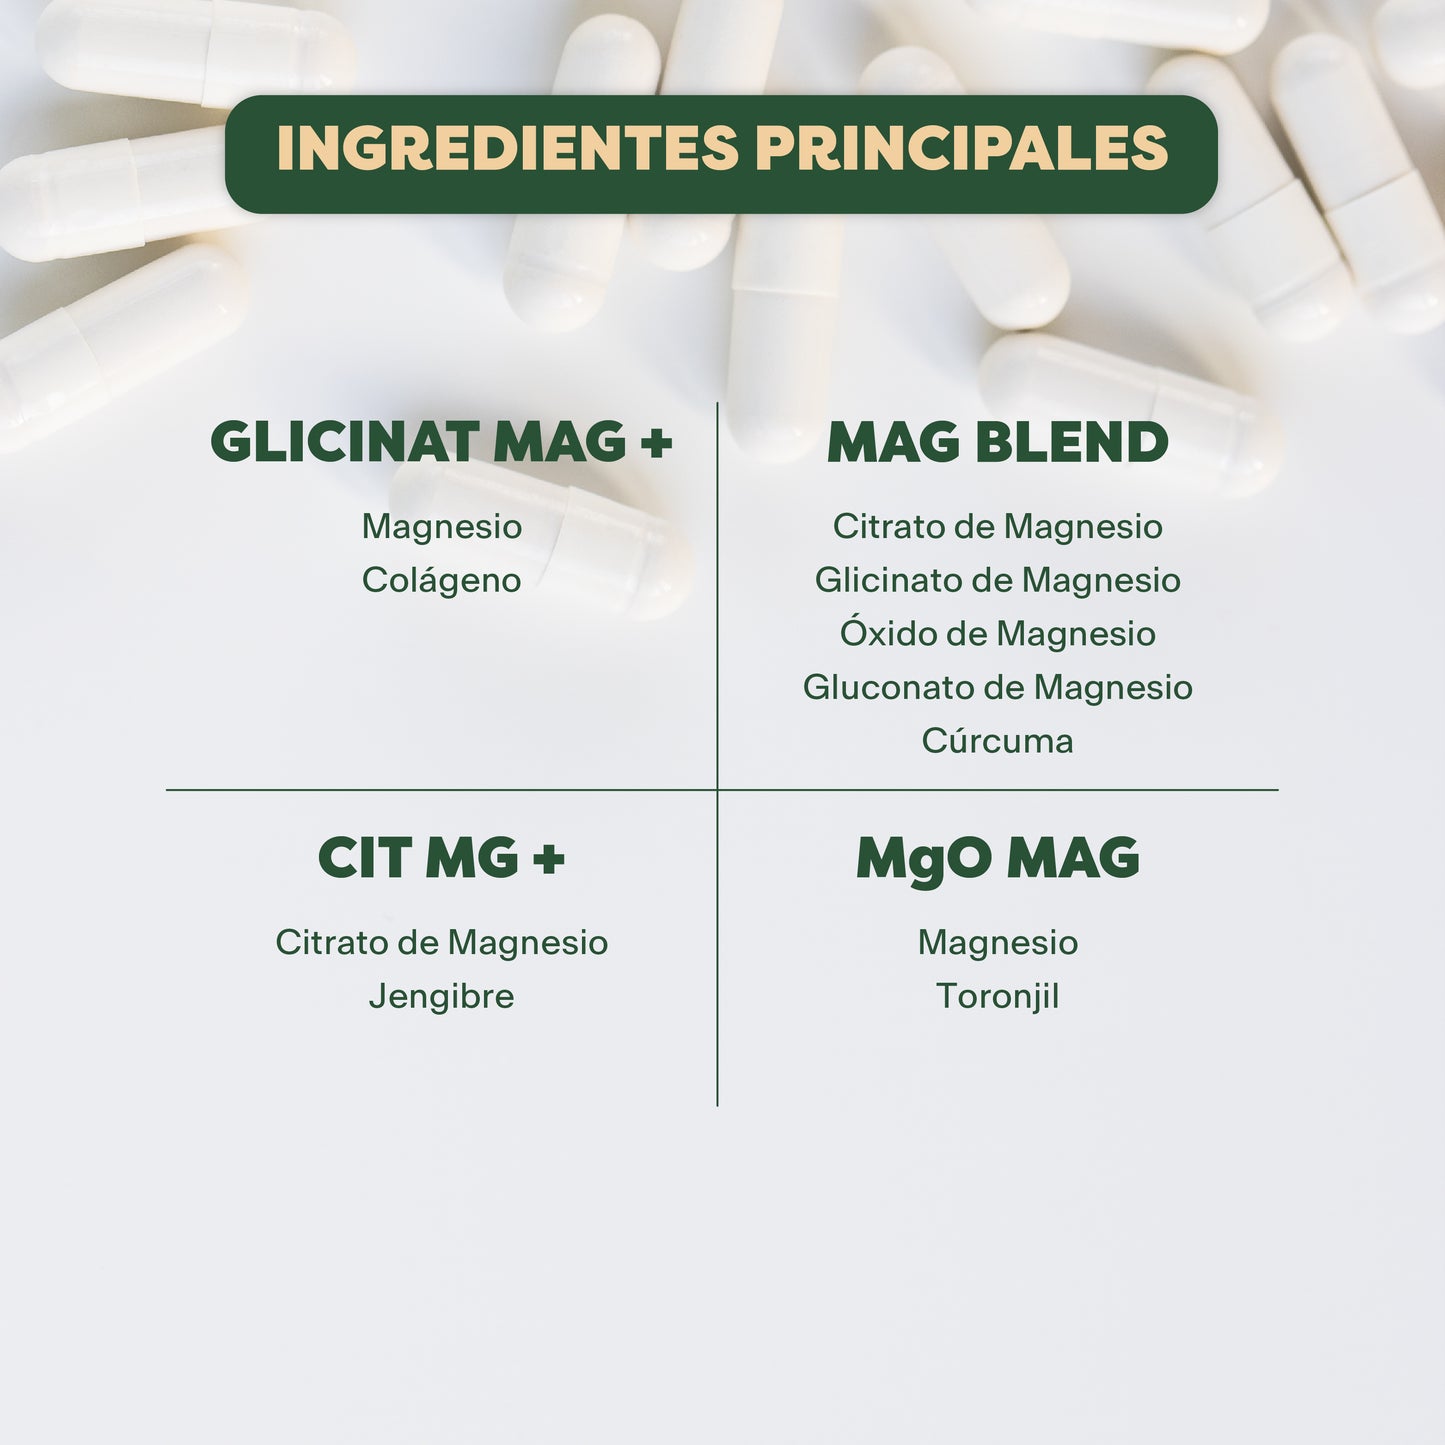 KIT MAGNESIOS | GLICINAT MAG +, MAG BLEND, CIT MG +, MgO MAG